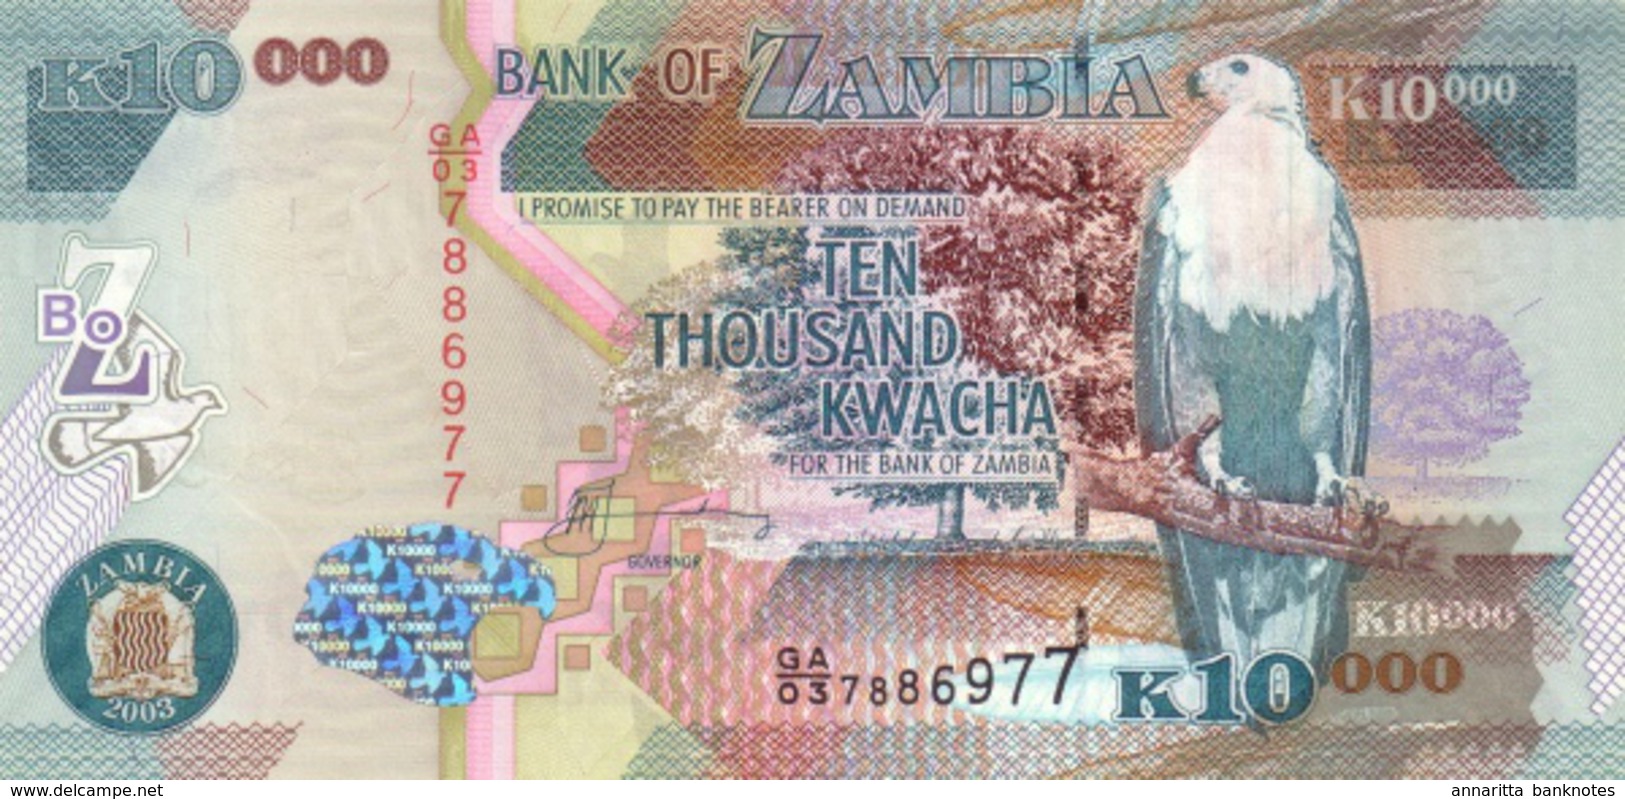 ZAMBIA 10000 KWACHA 2003 P-46a UNC RARE [ZM148a] - Zambia